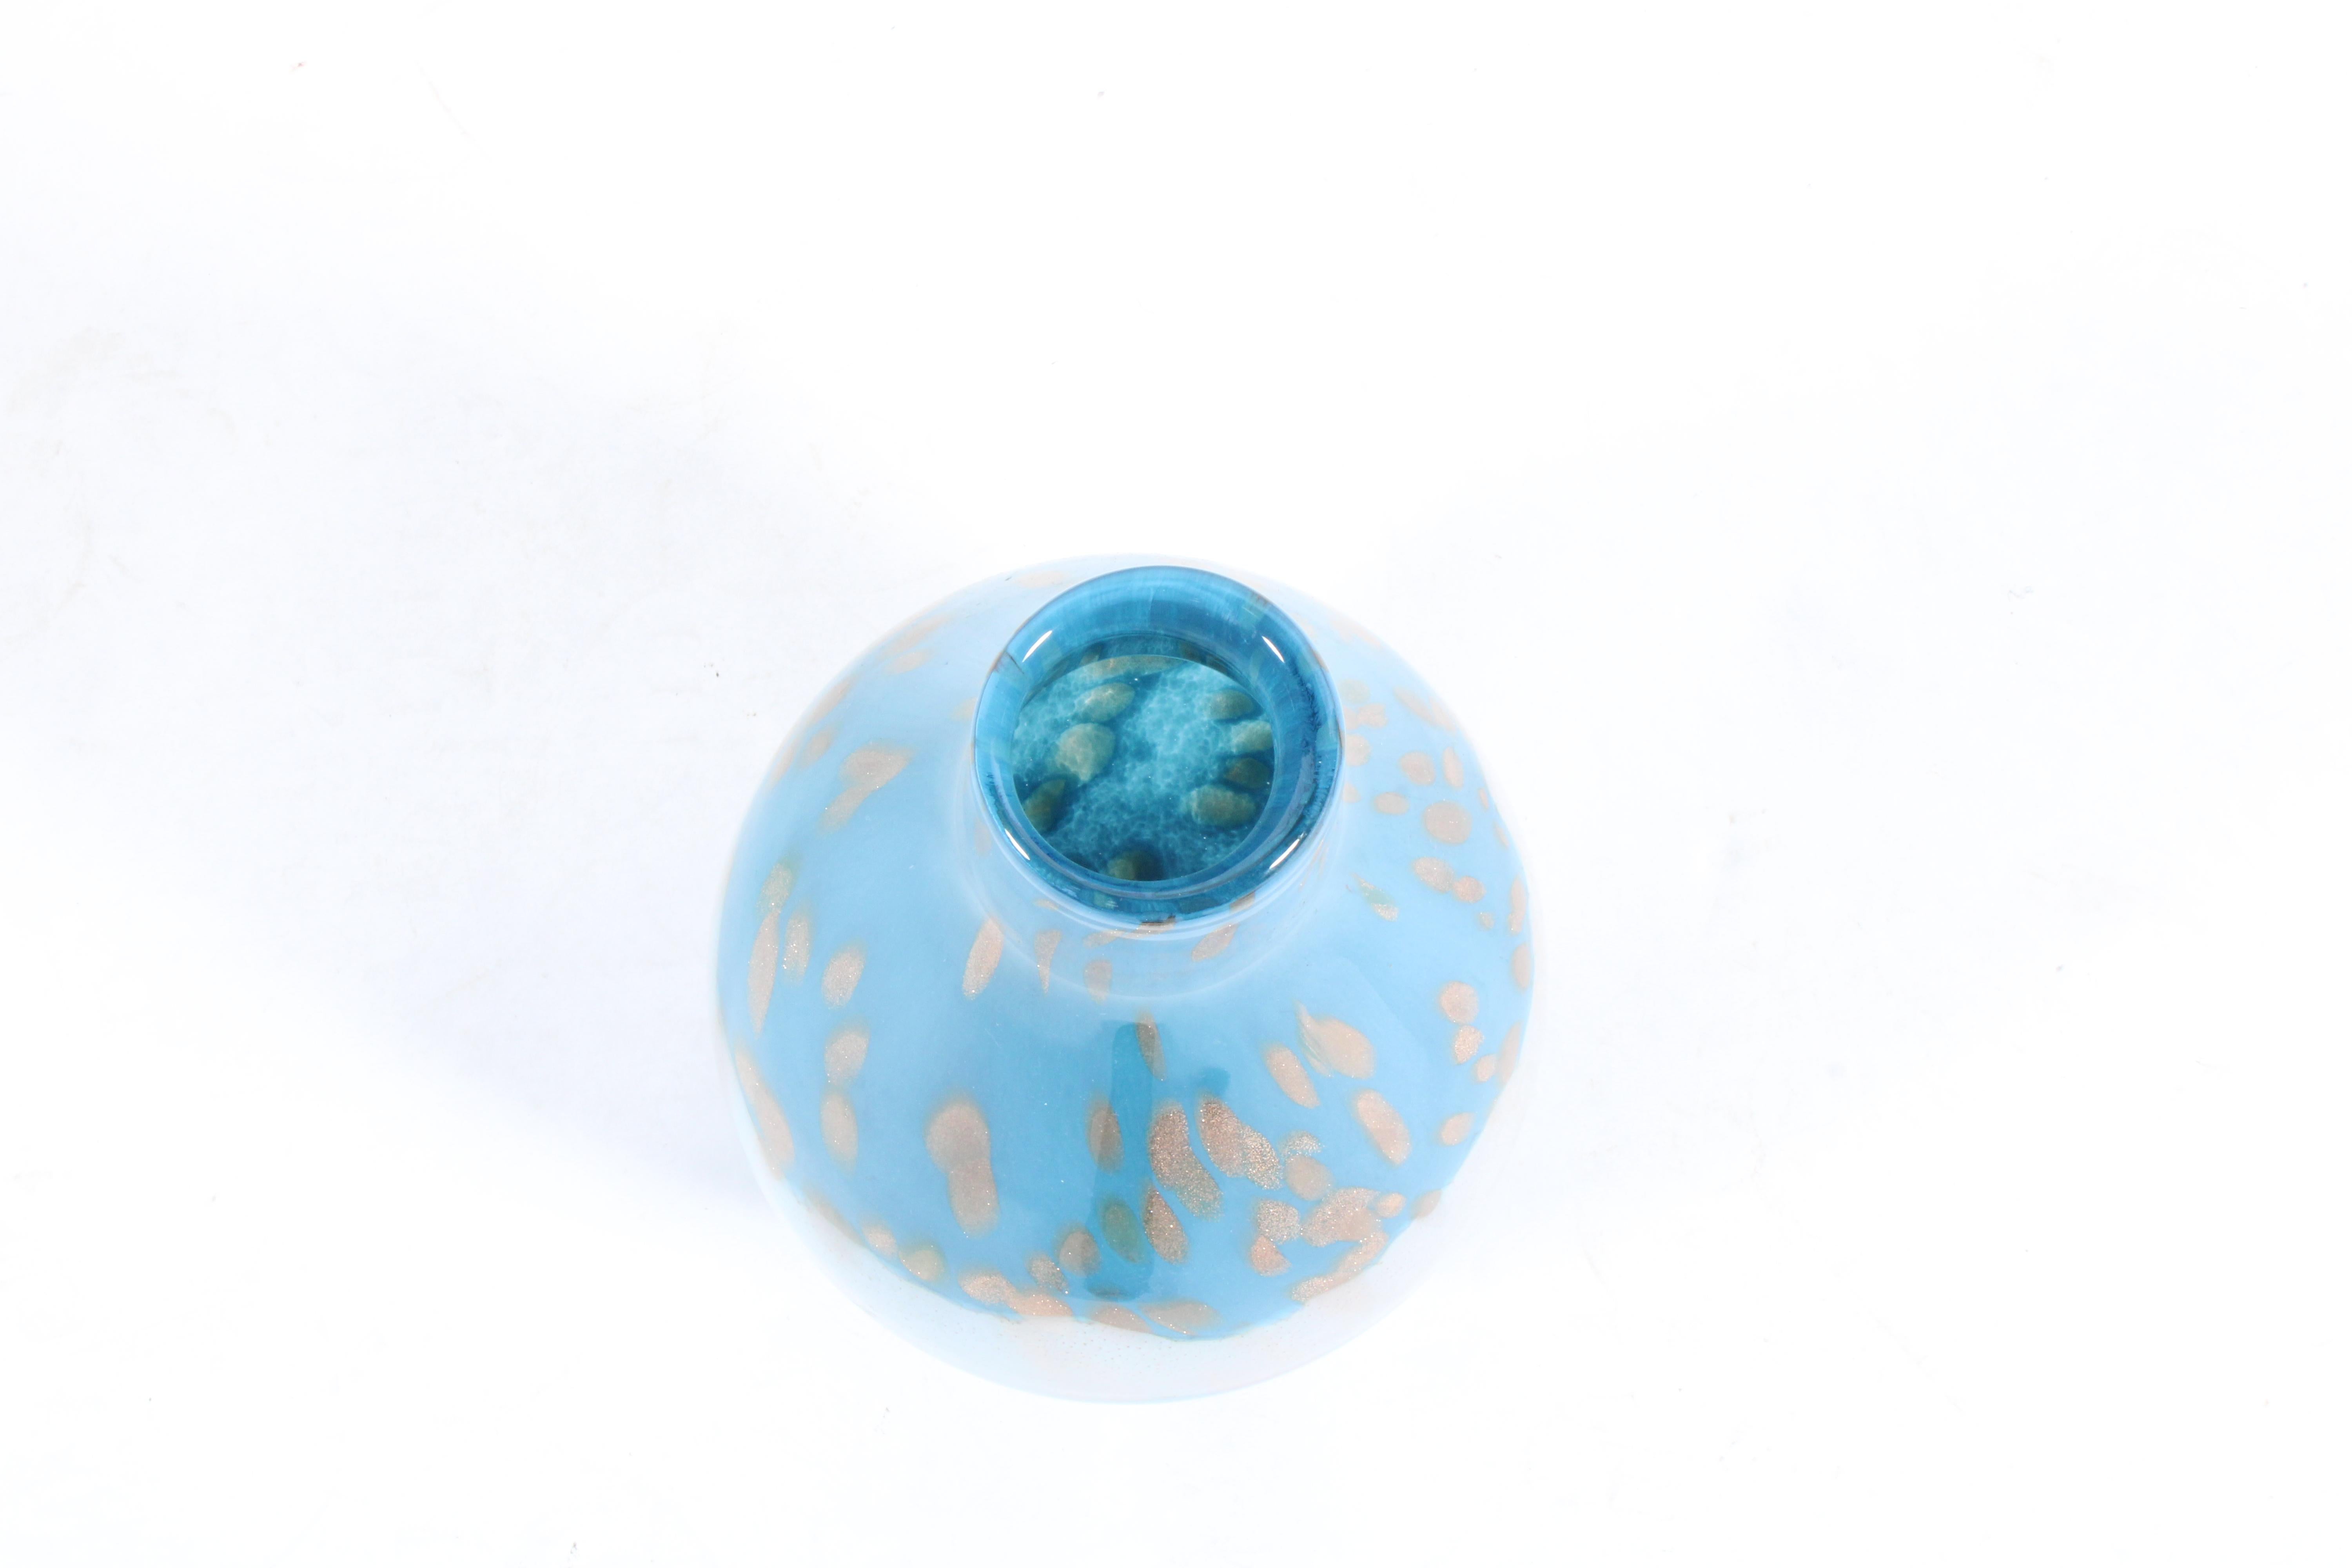 Vintage By By est un vase en verre bleu, blanc et or de forme bulbeuse.  Un magnifique objet de décoration pour la table ou le buffet, en superbe état vintage.

Italien vers 1960